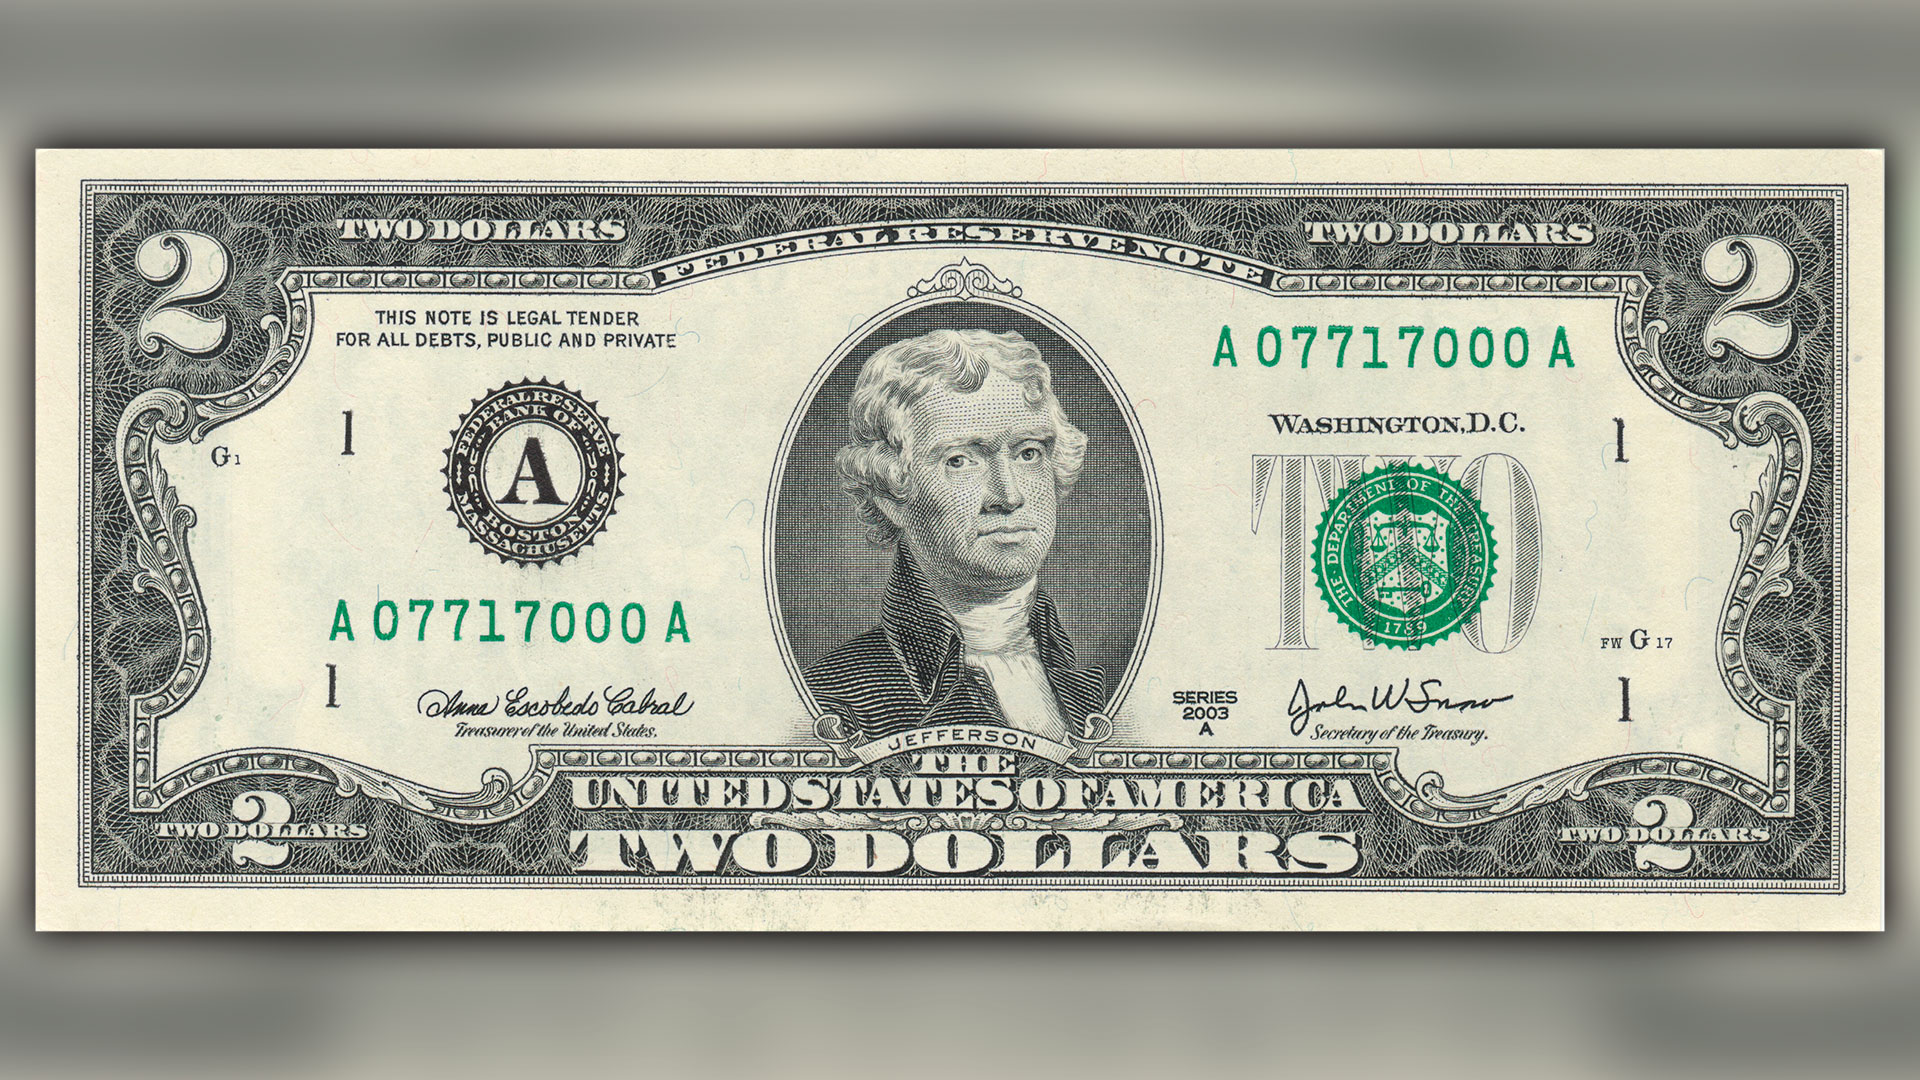 2 dólares: la increíble historia del billete de EEUU que nadie conoce y por qué puede valer hasta USD 800